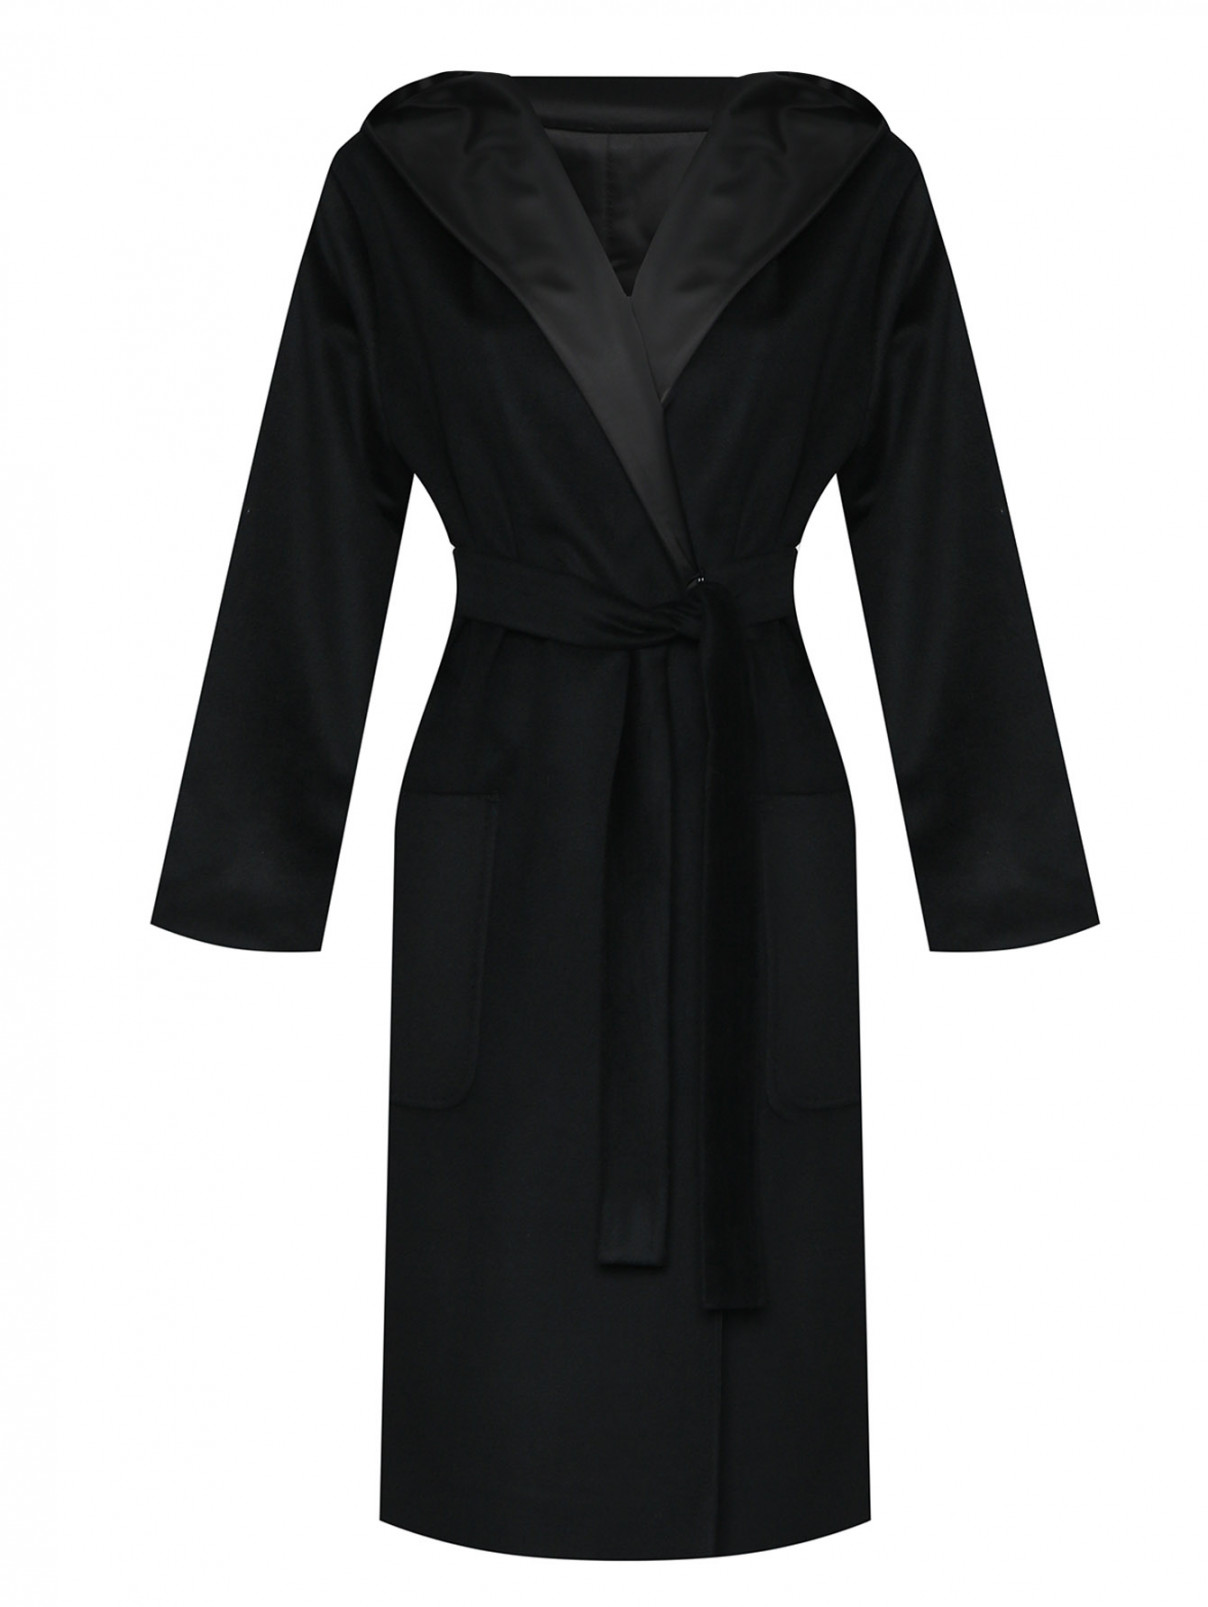 Пальто с капюшоном и поясом Marina Rinaldi  –  Общий вид  – Цвет:  Черный